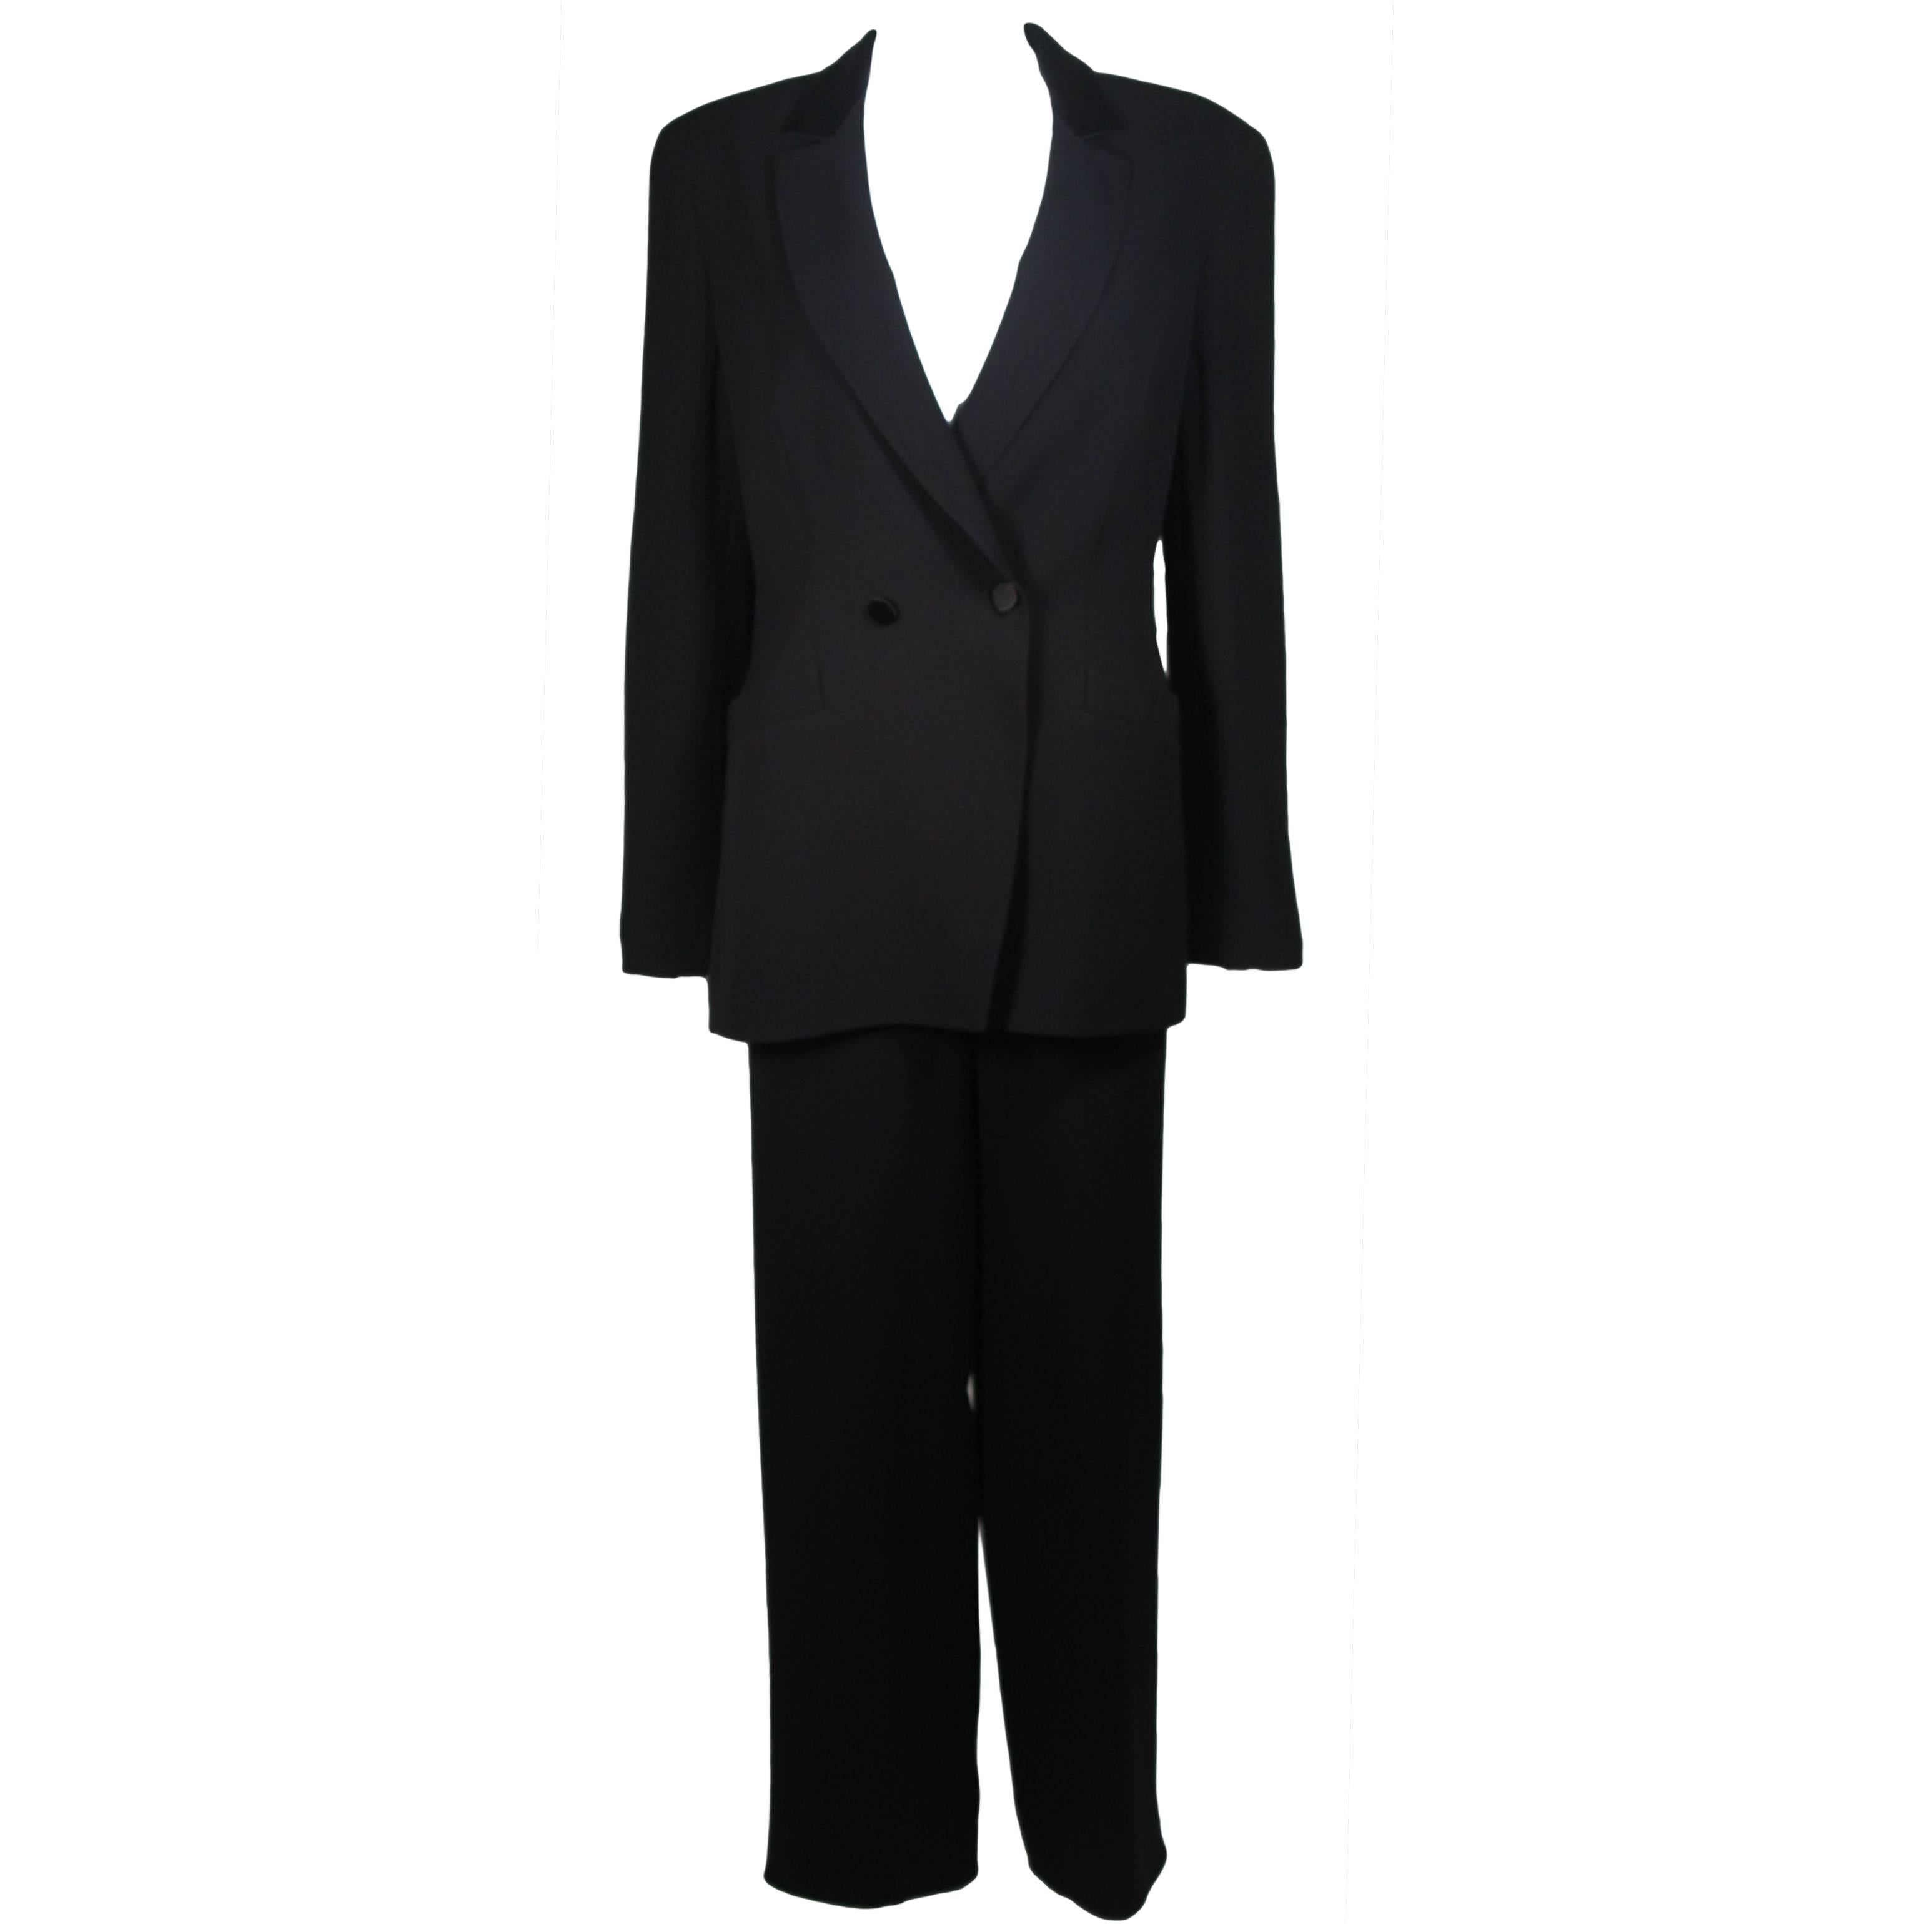 Giorgio Armani Black Silk Tuxedo Style Pant Suit Size 42